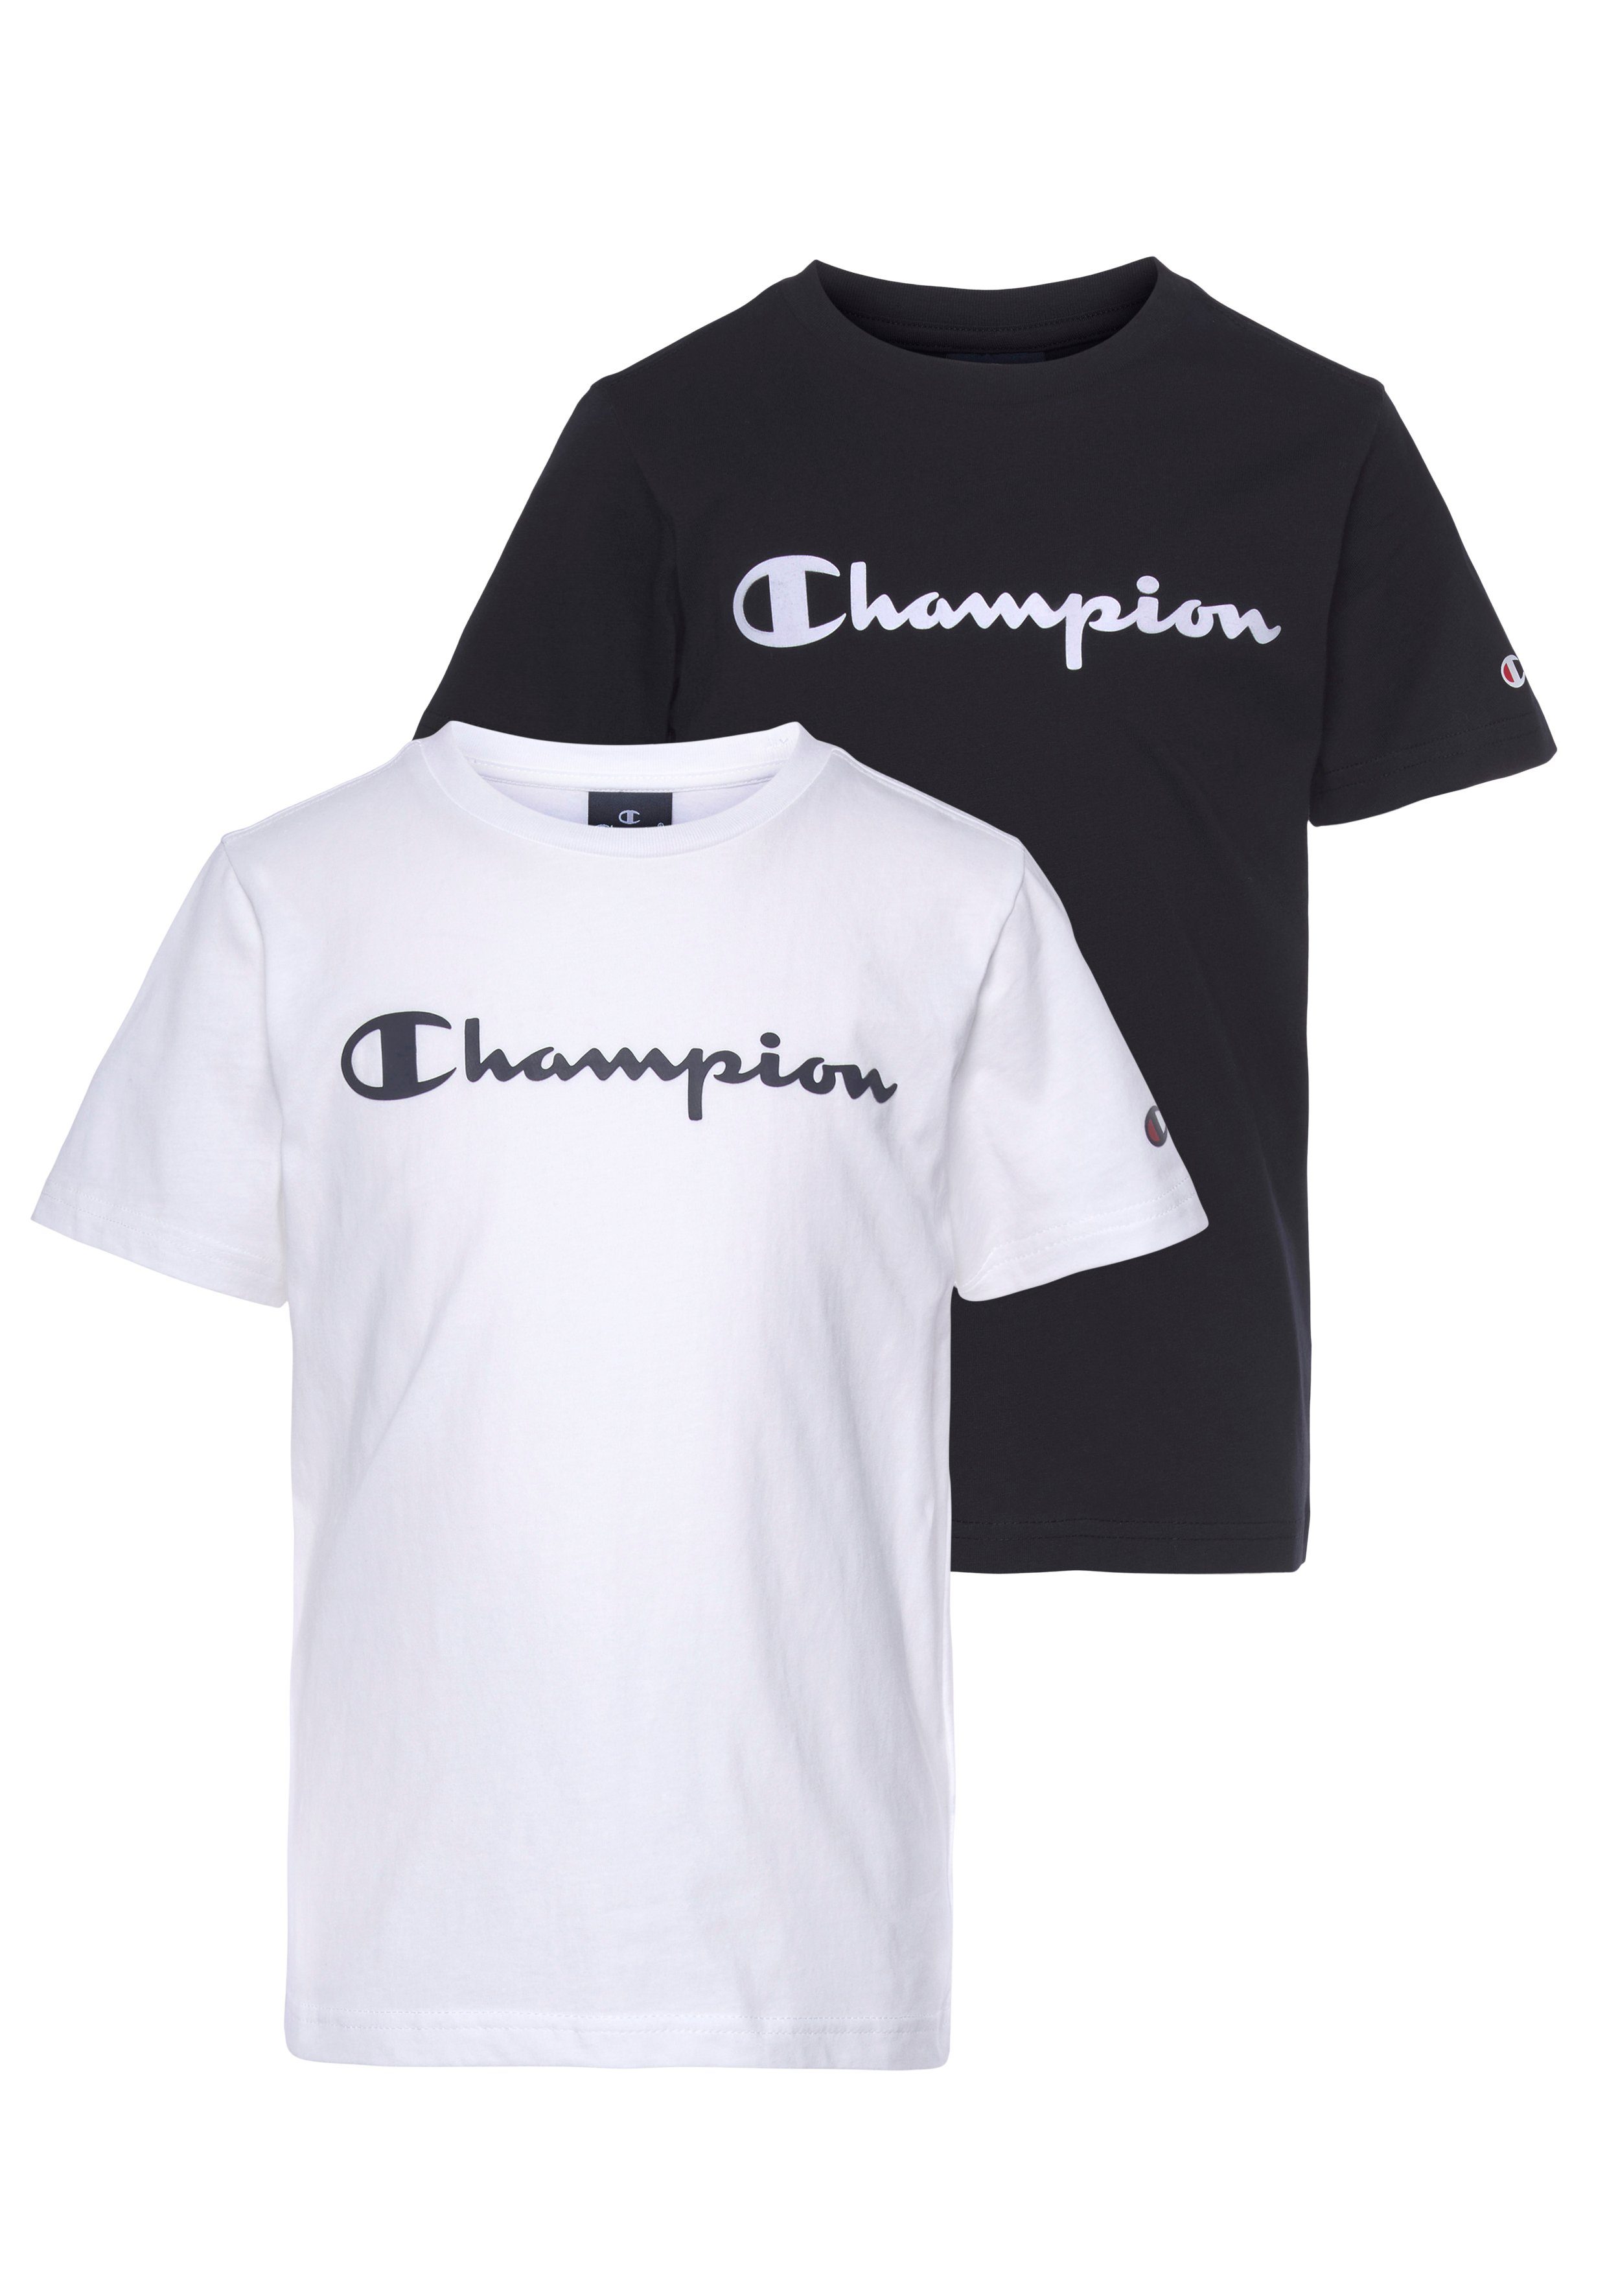 Beliebte Artikel T-Shirt Crewneck für Kinder 2Pack - Champion T-Shirt schwarz-weiß